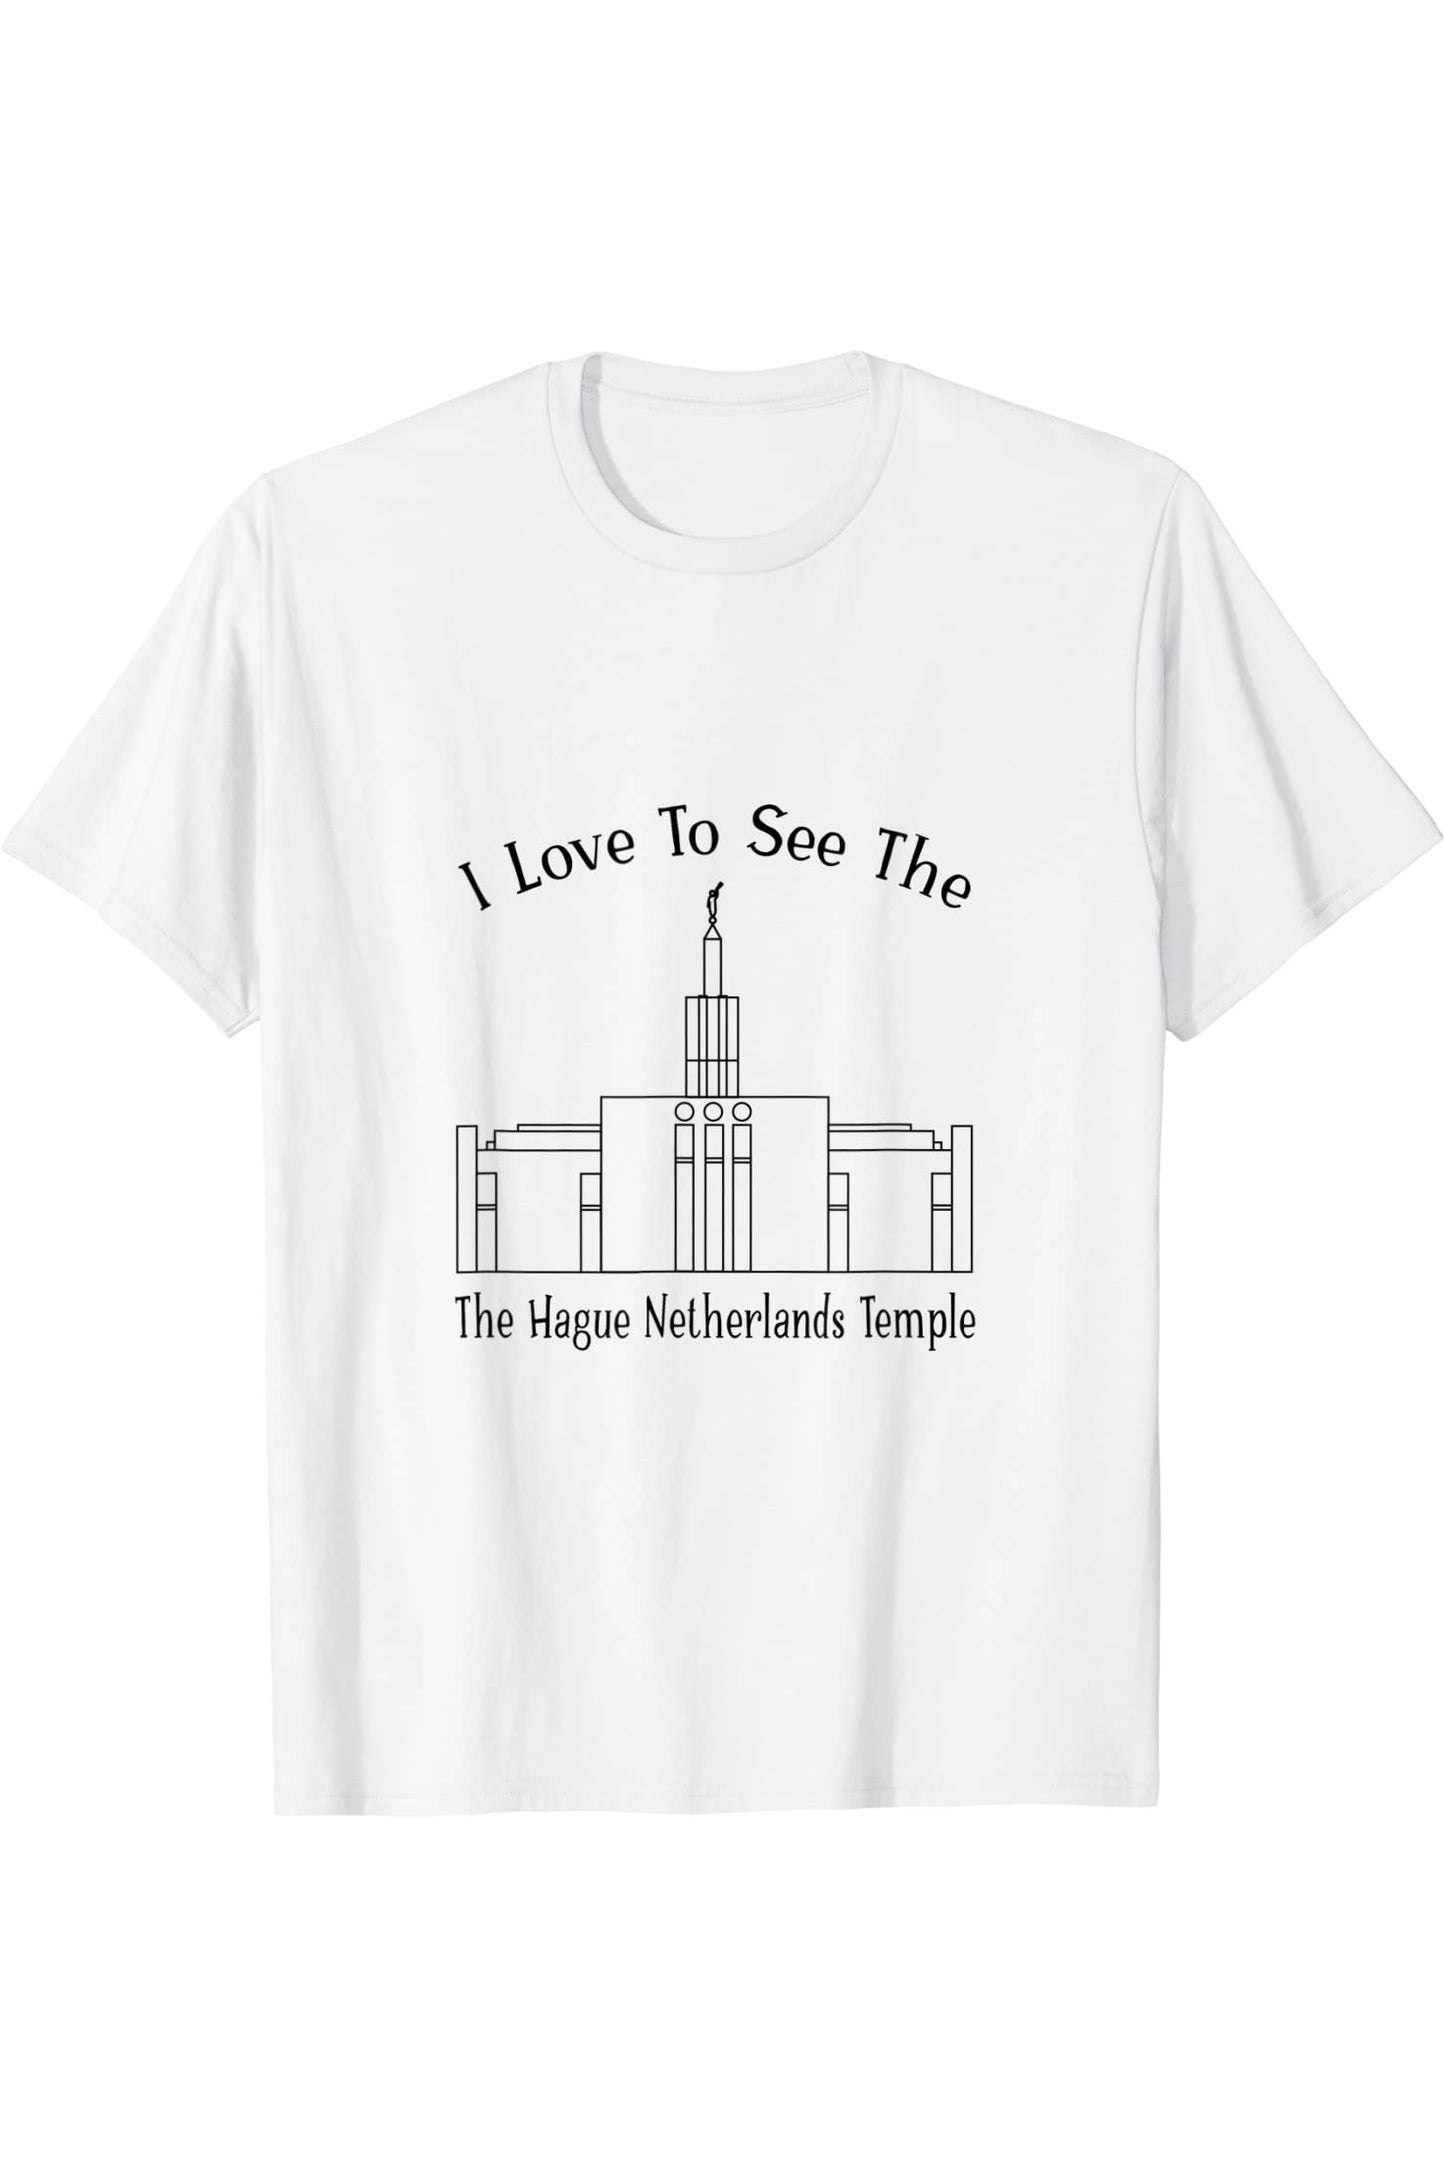 Der Haag Niederlande Tempel, ich liebe meinen Tempel zu sehen, glücklich T-Shirt